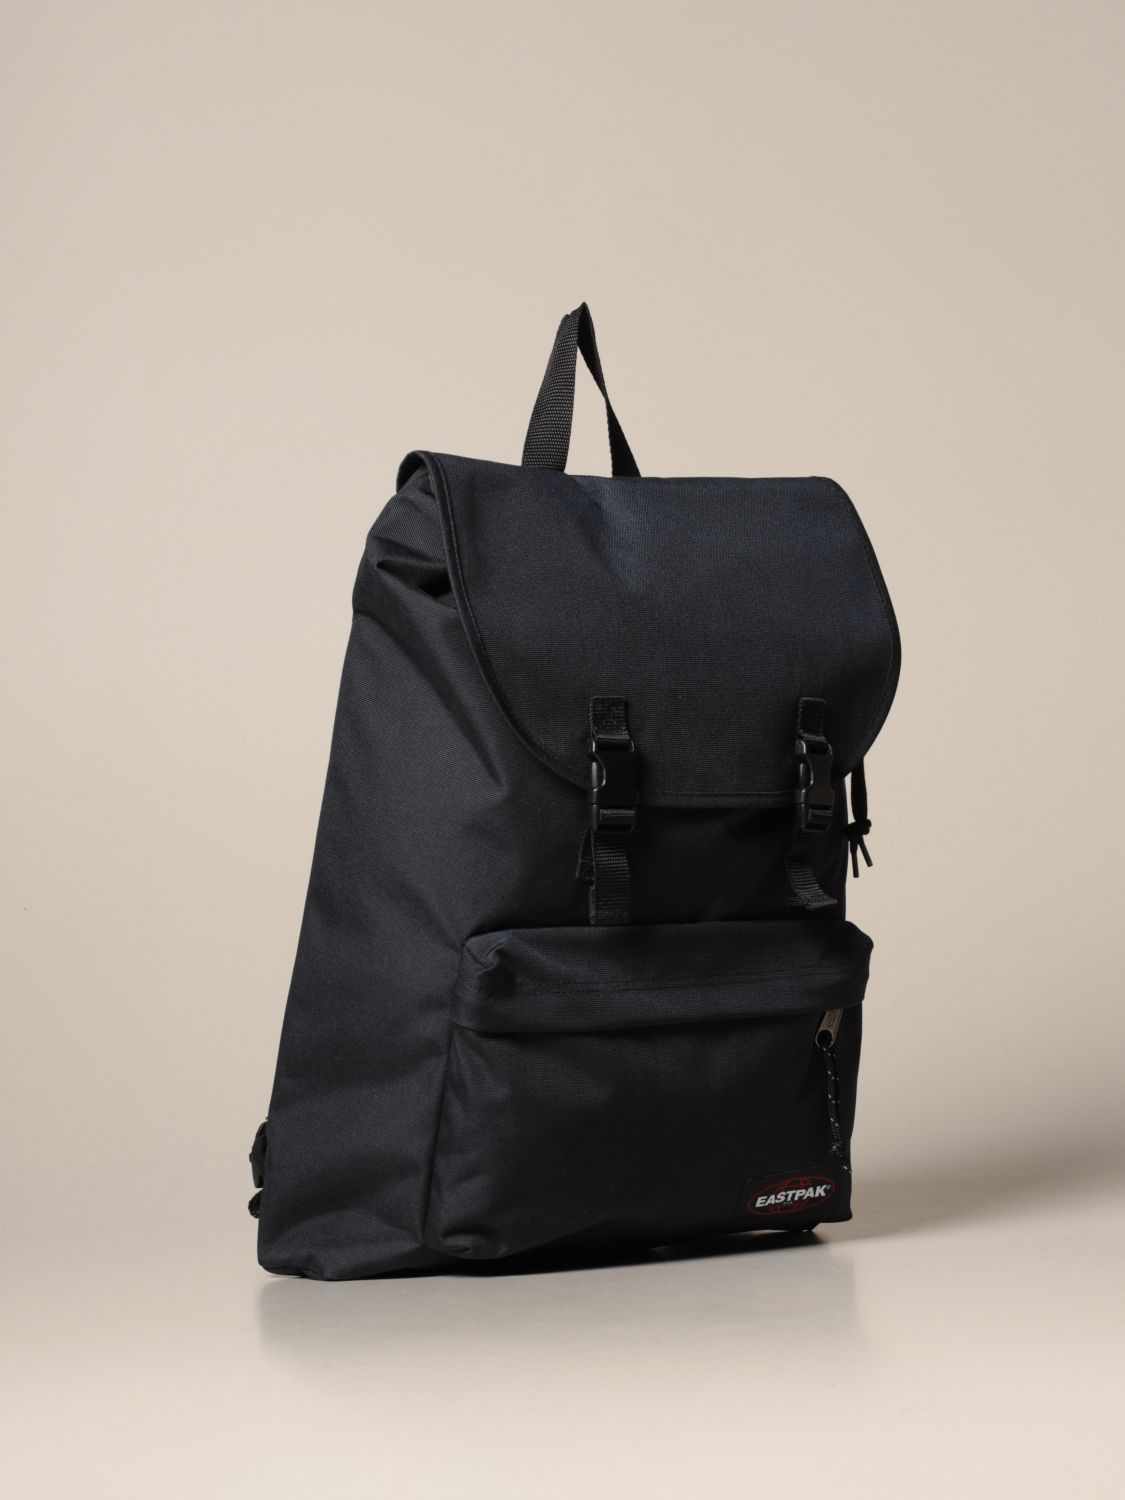 ik heb honger regenval Startpunt EASTPAK: London nylon backpack - Navy | Eastpak backpack EK64E22S online on  GIGLIO.COM